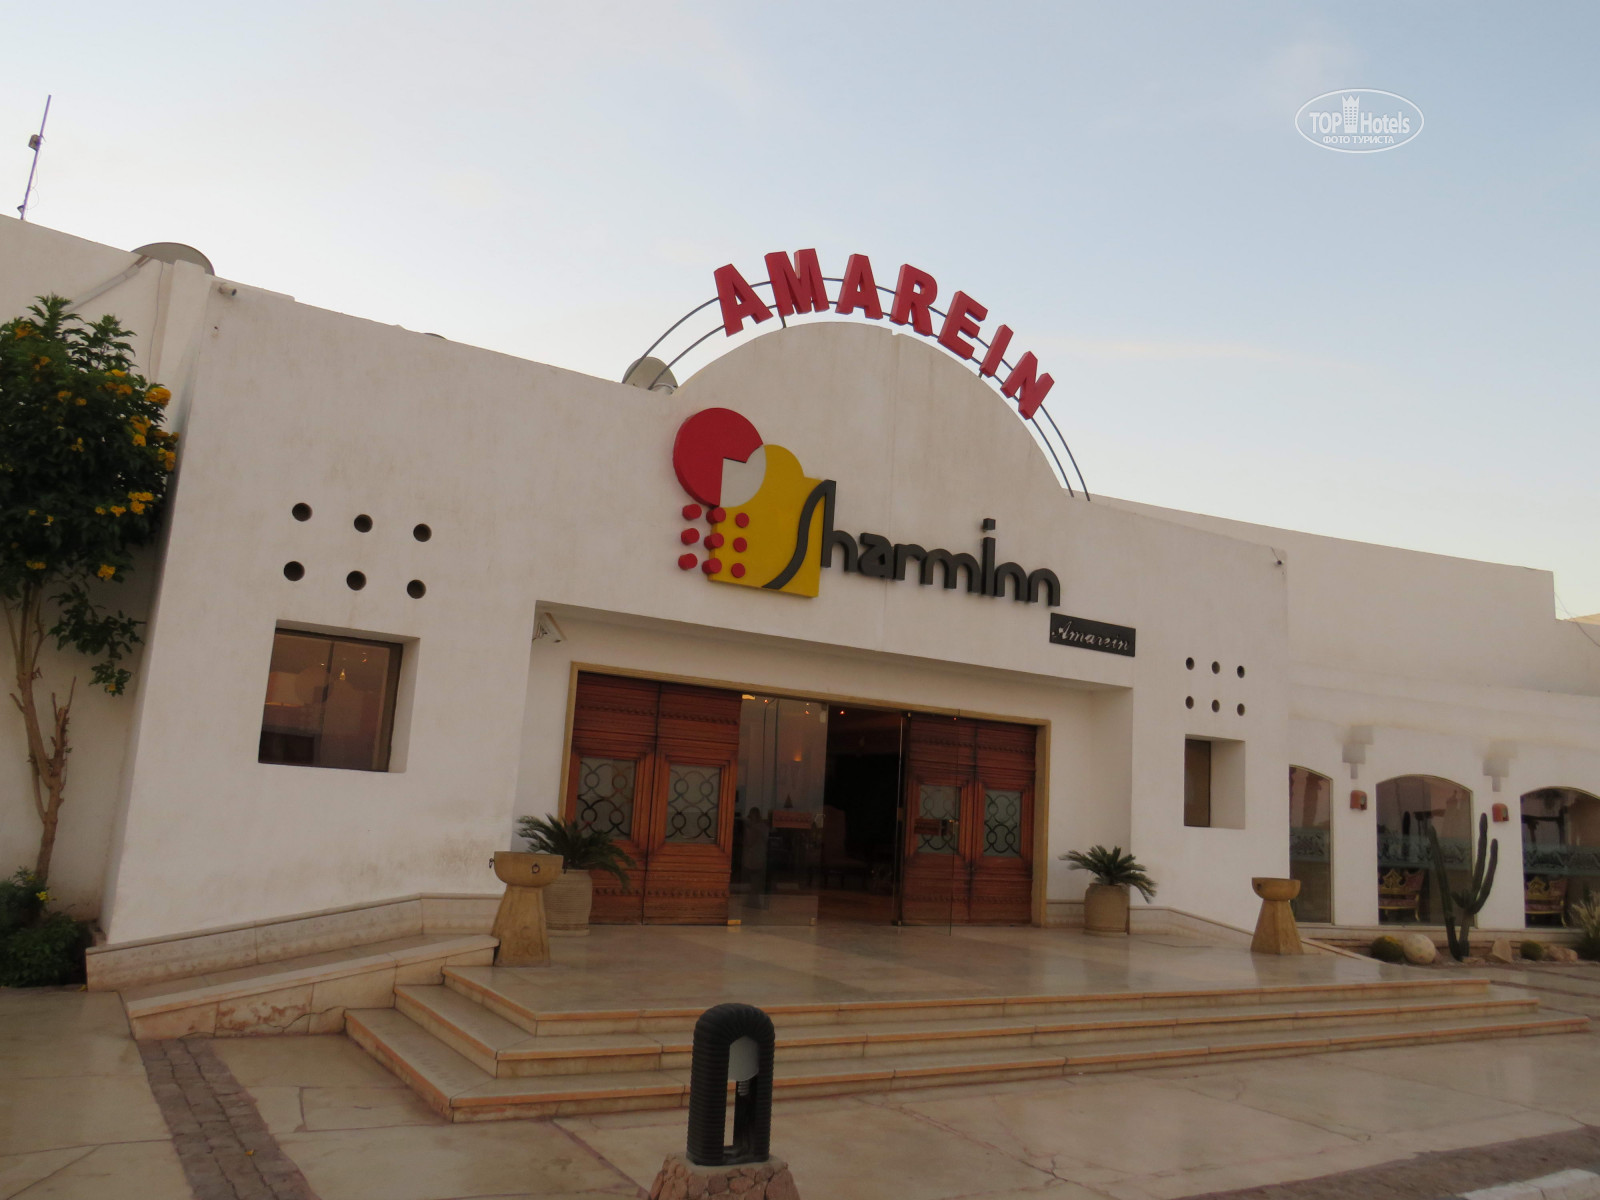 Sharming inn 4 отзывы. Sharm Inn Amarein. Sharm im Amarein 4. Sharming Inn Hotel 4. Sharming Inn 4*.